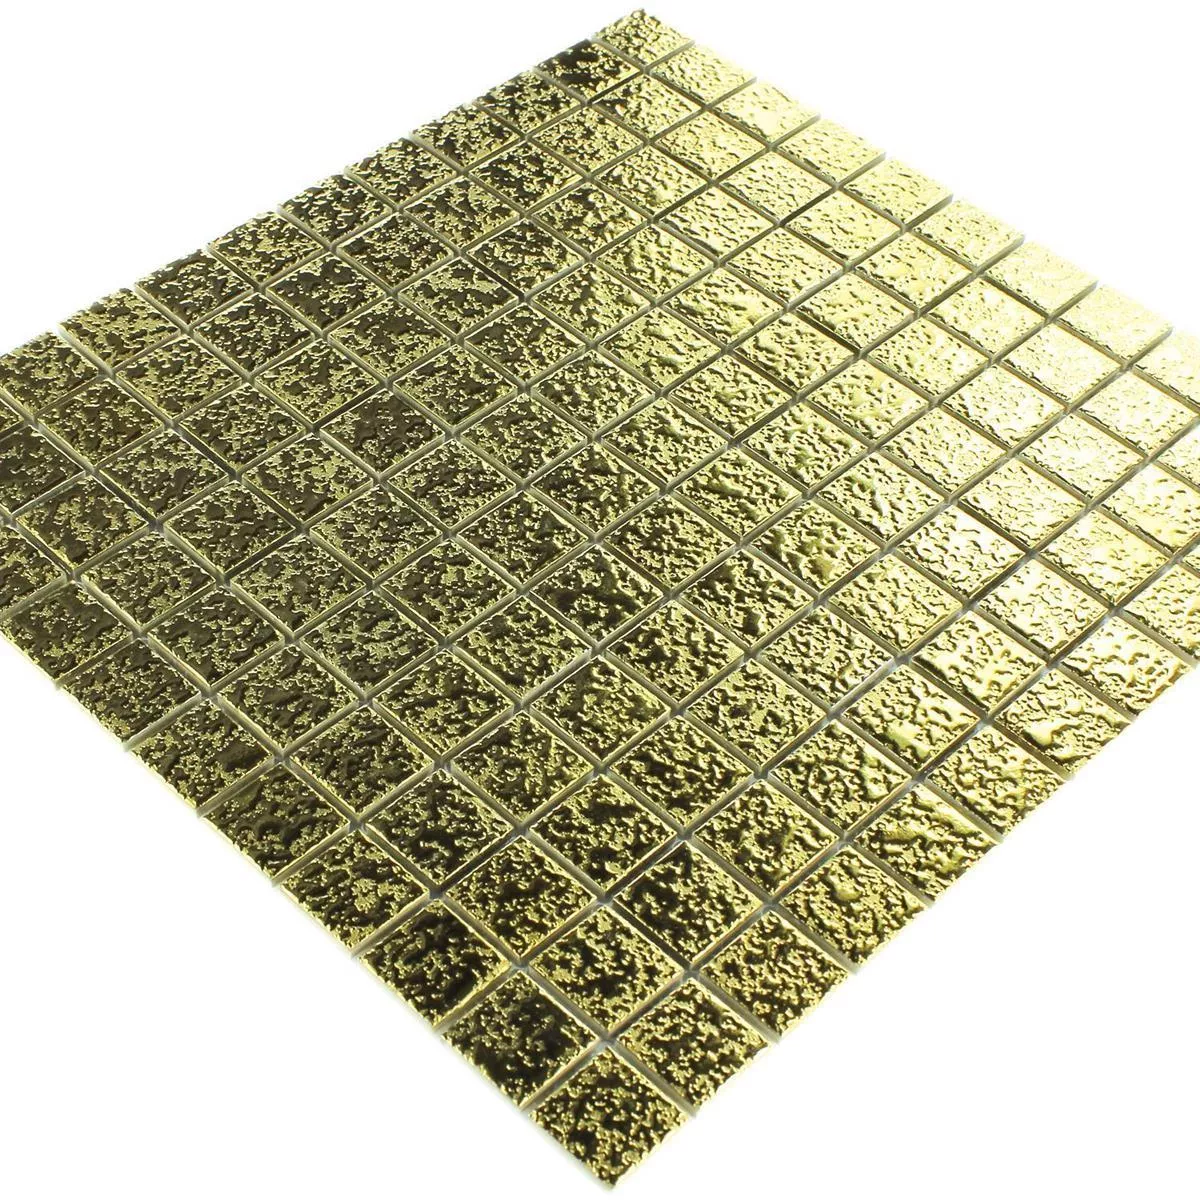 Mosaic Tiles Ceramic Sherbrooke Gold Beaten